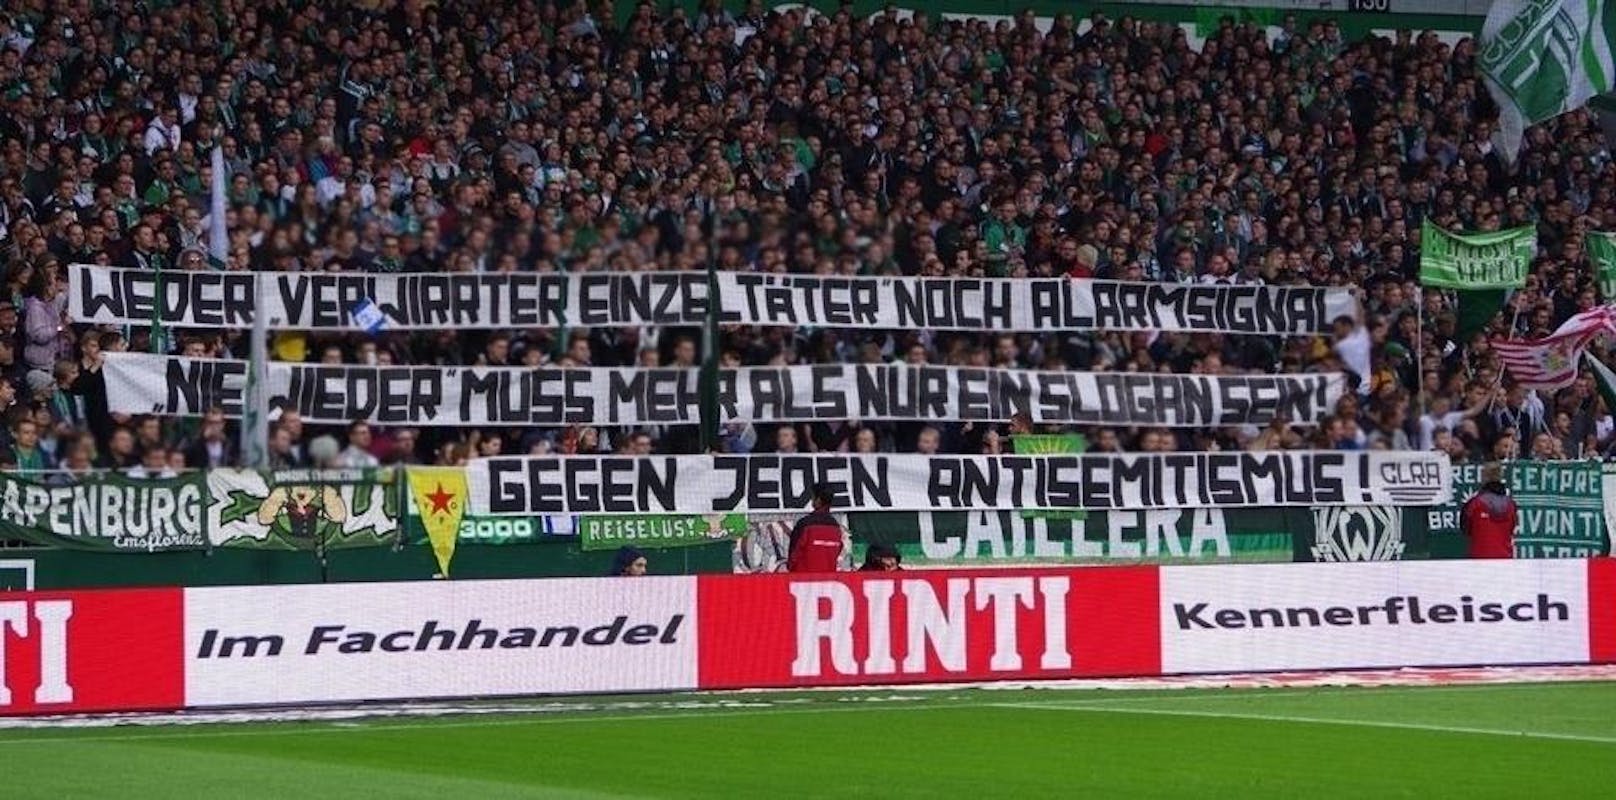 Das Spruchband der Fans von Werder Bremen bezieht sich auf den Amoklauf in Halle, bei dem zwei Menschen getötet wurden.